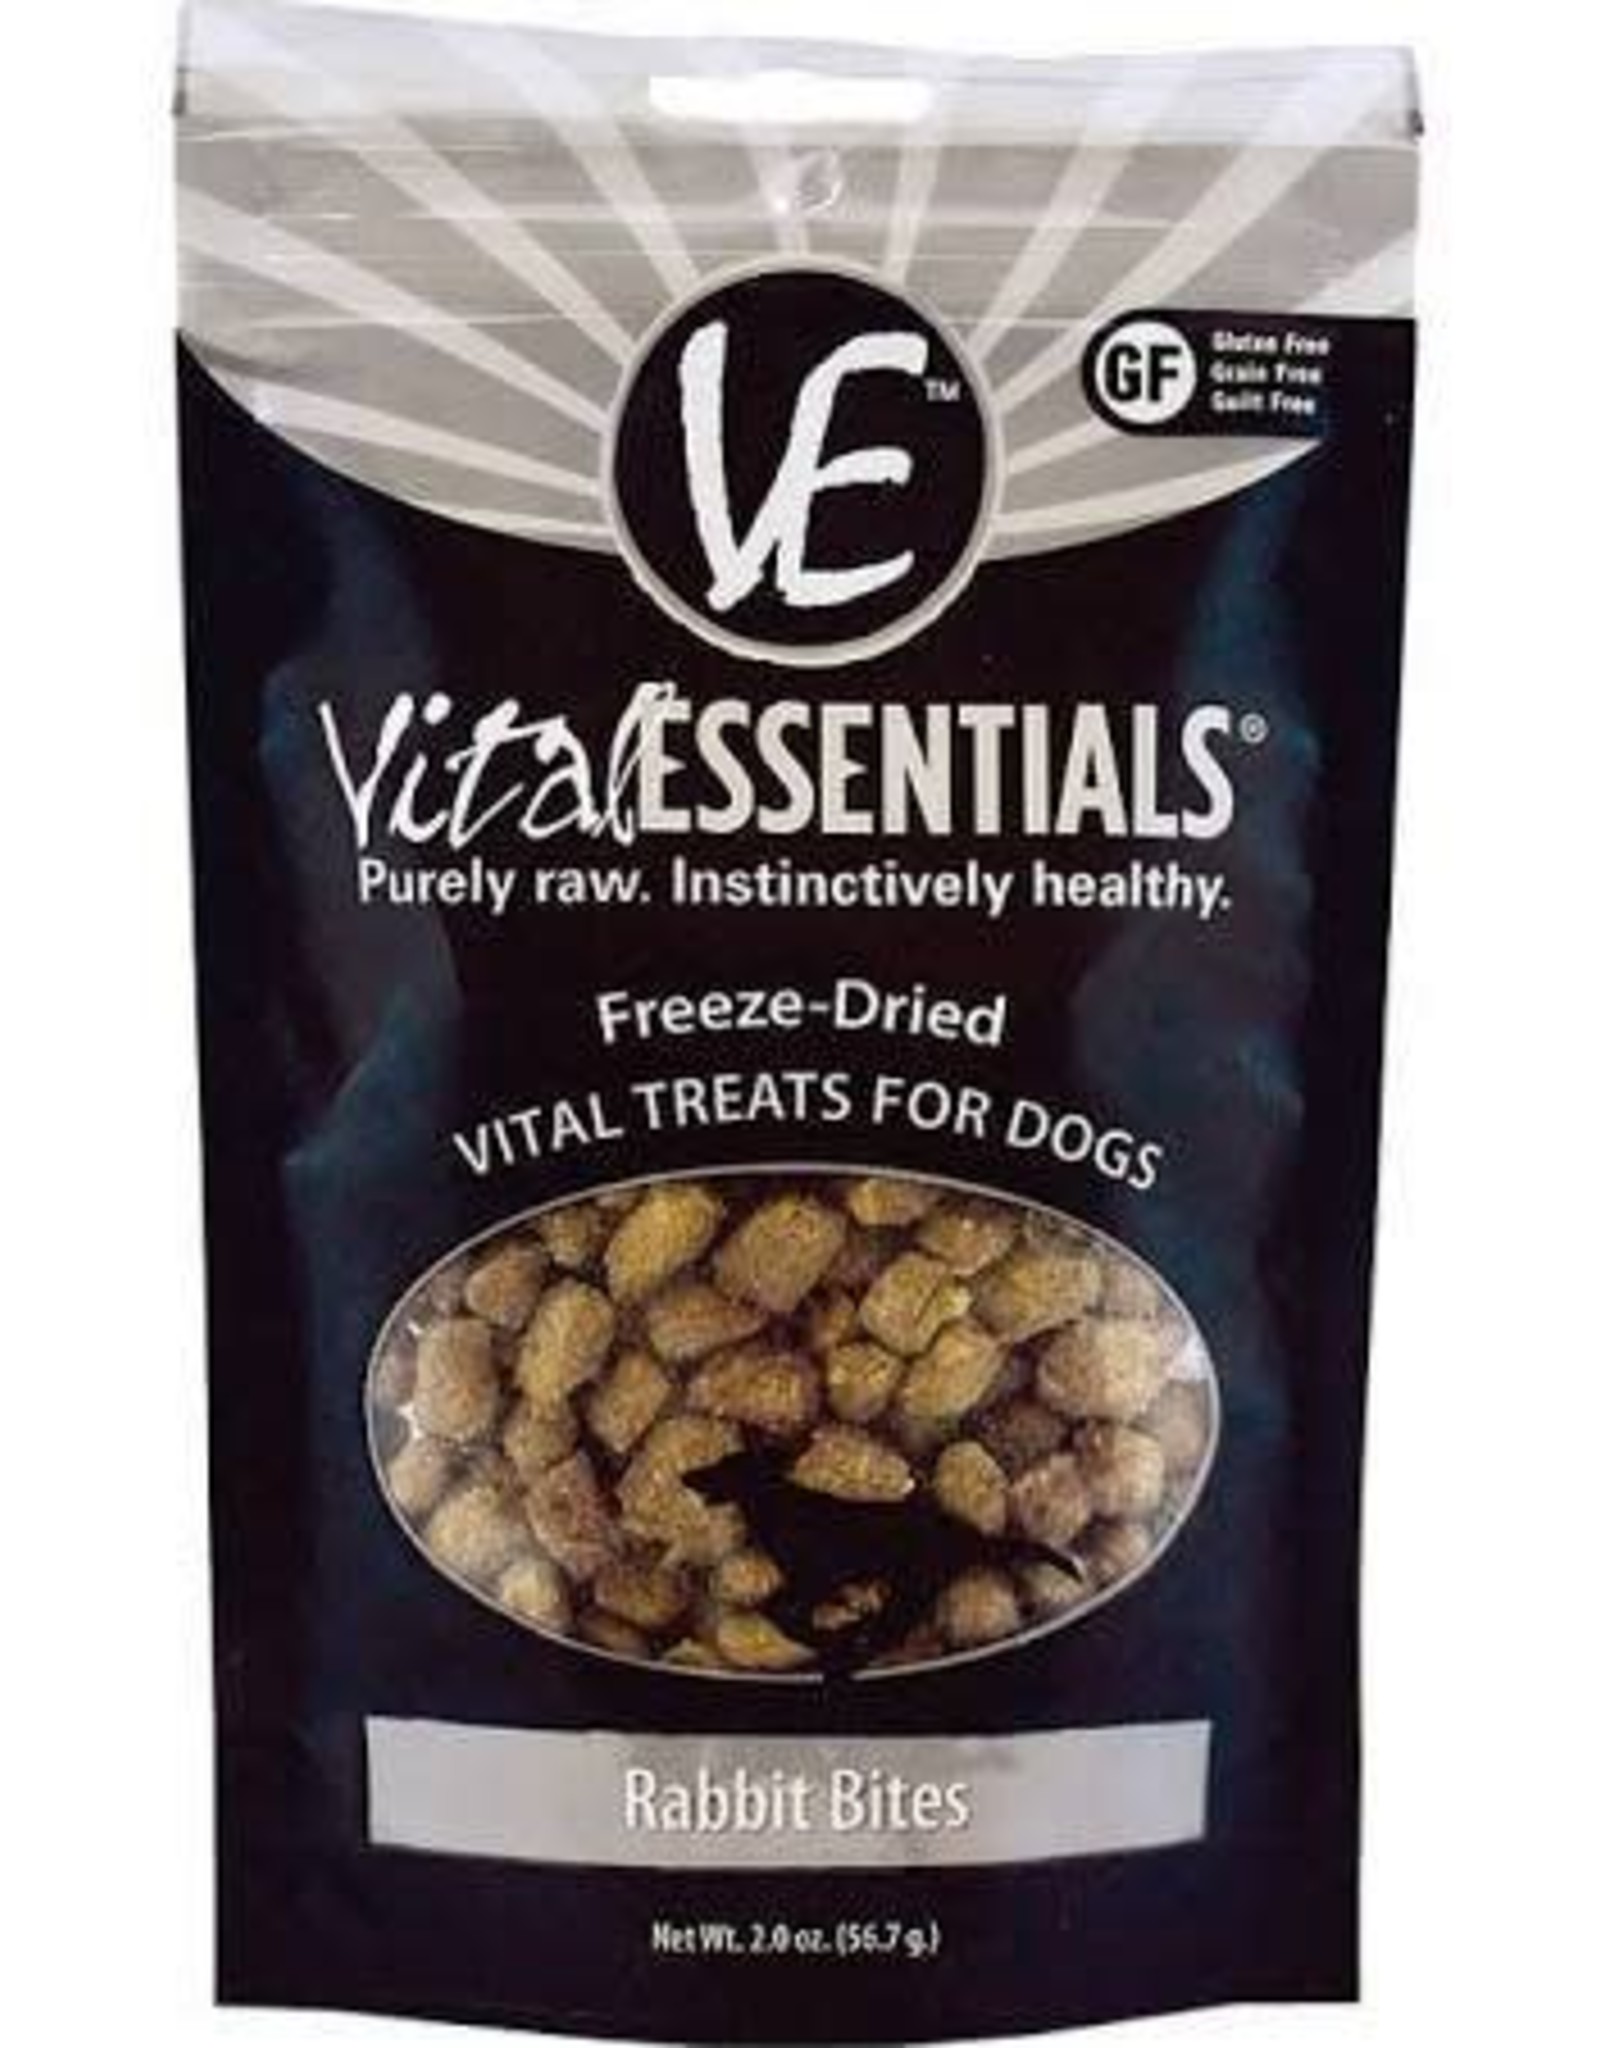 Vital Essentials Vital Essentials Rabbit Bites Freeze-Dried Dog Treats 2 oz